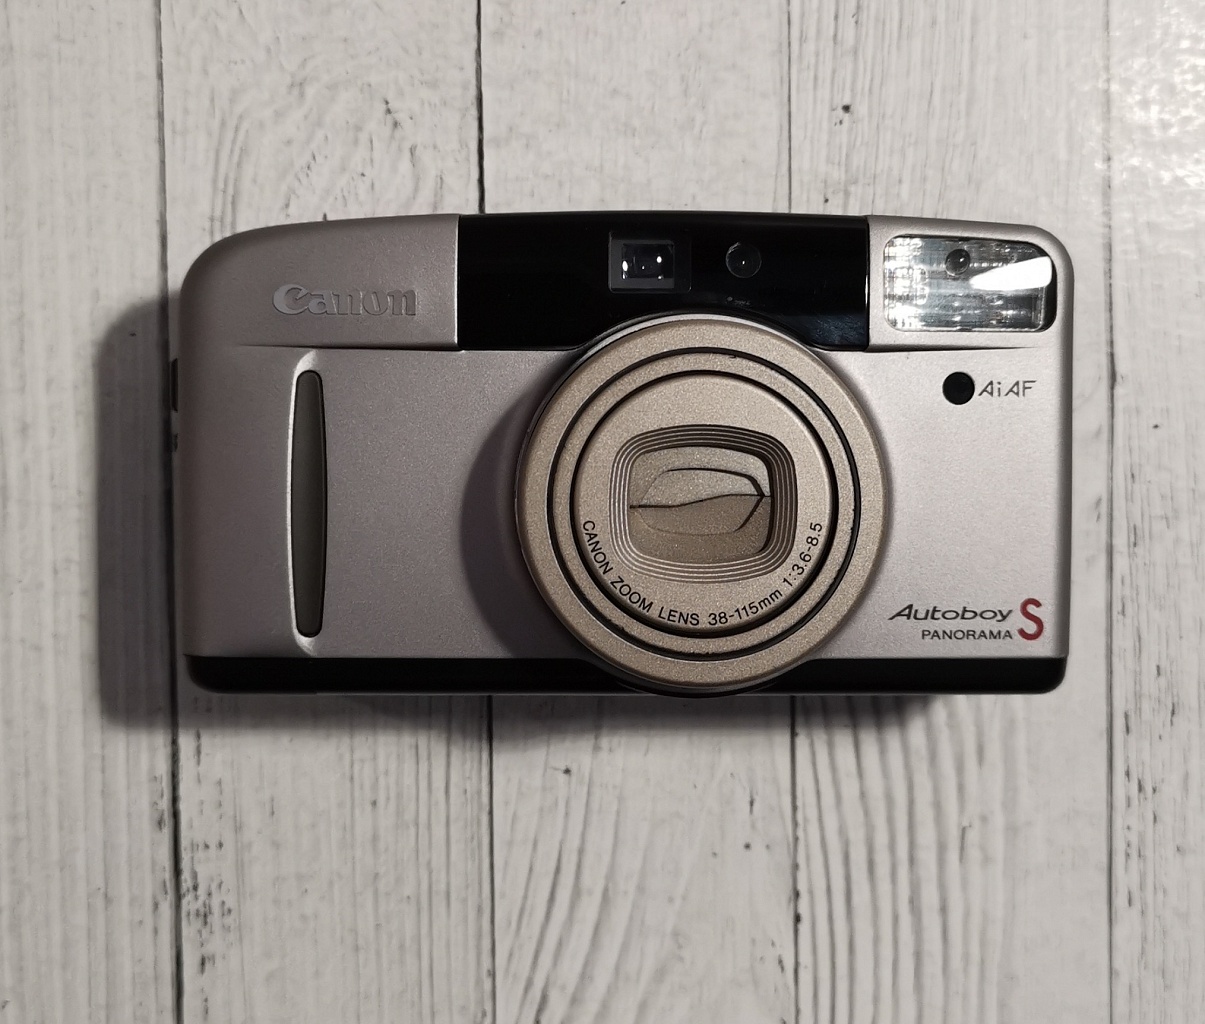 Canon Autoboy S panorama 38-115/Prima Super 115 фото №1